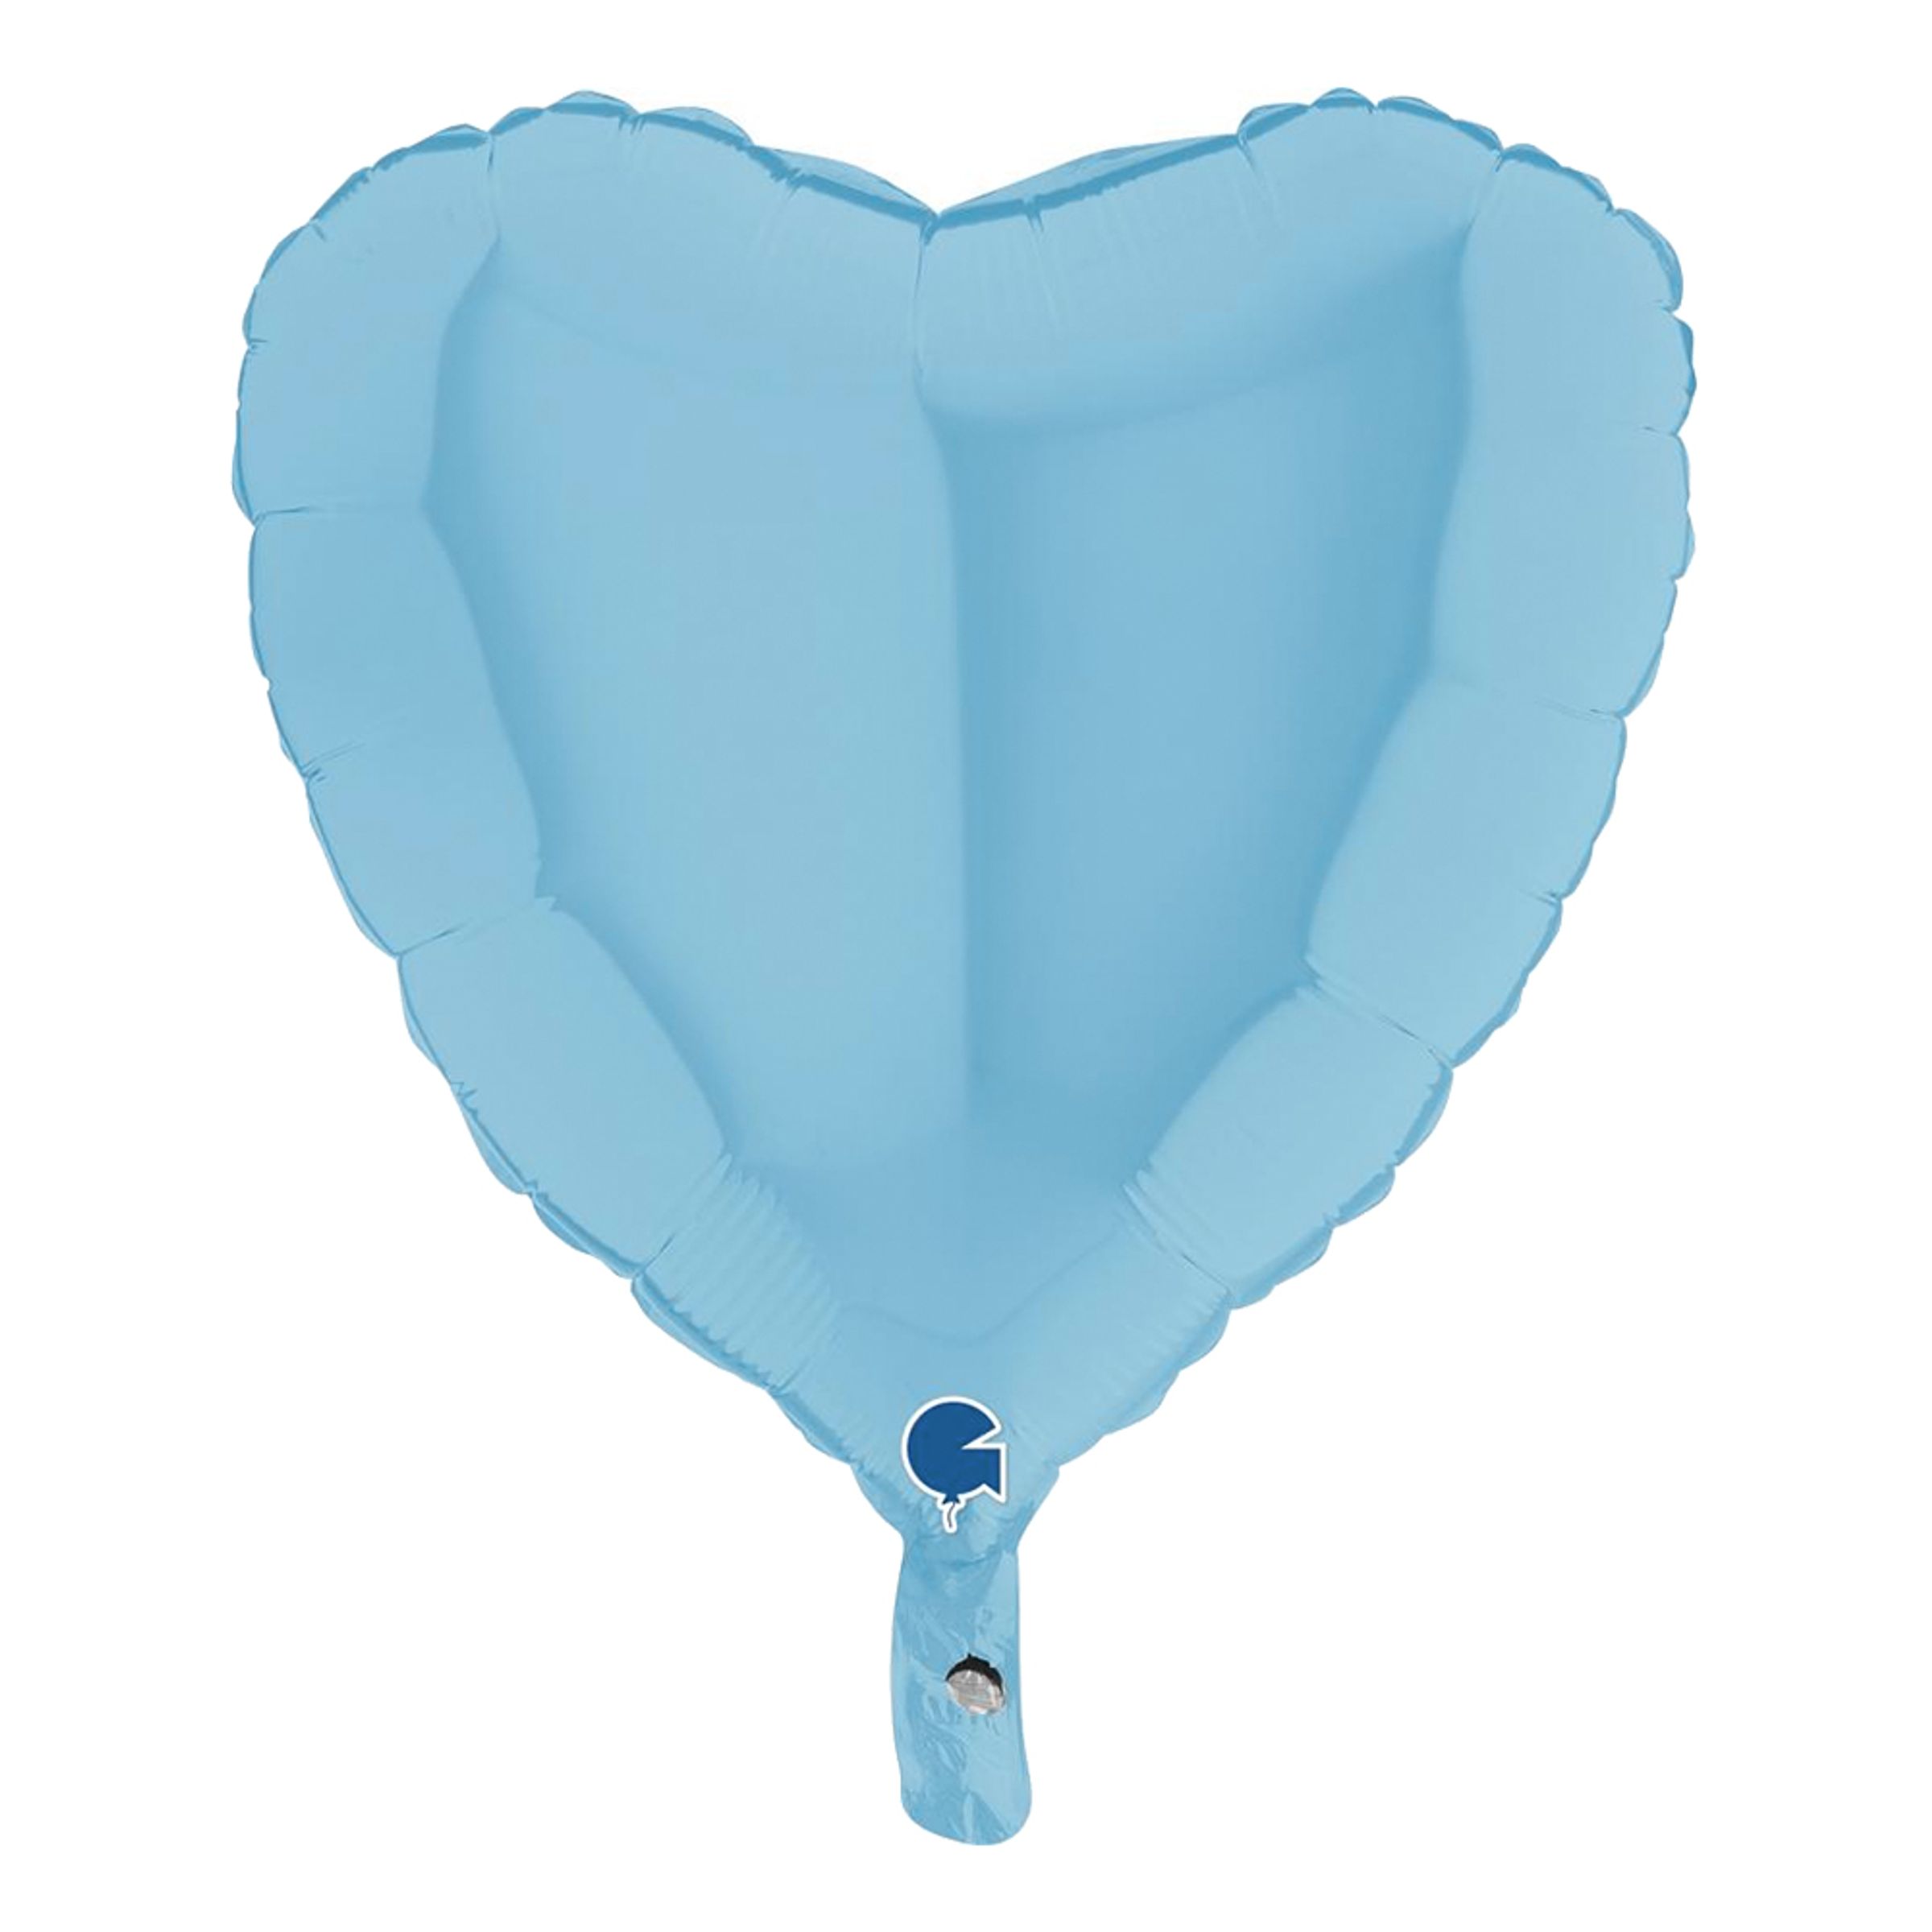 Folieballong Hjärta Pastellblå - 46 cm